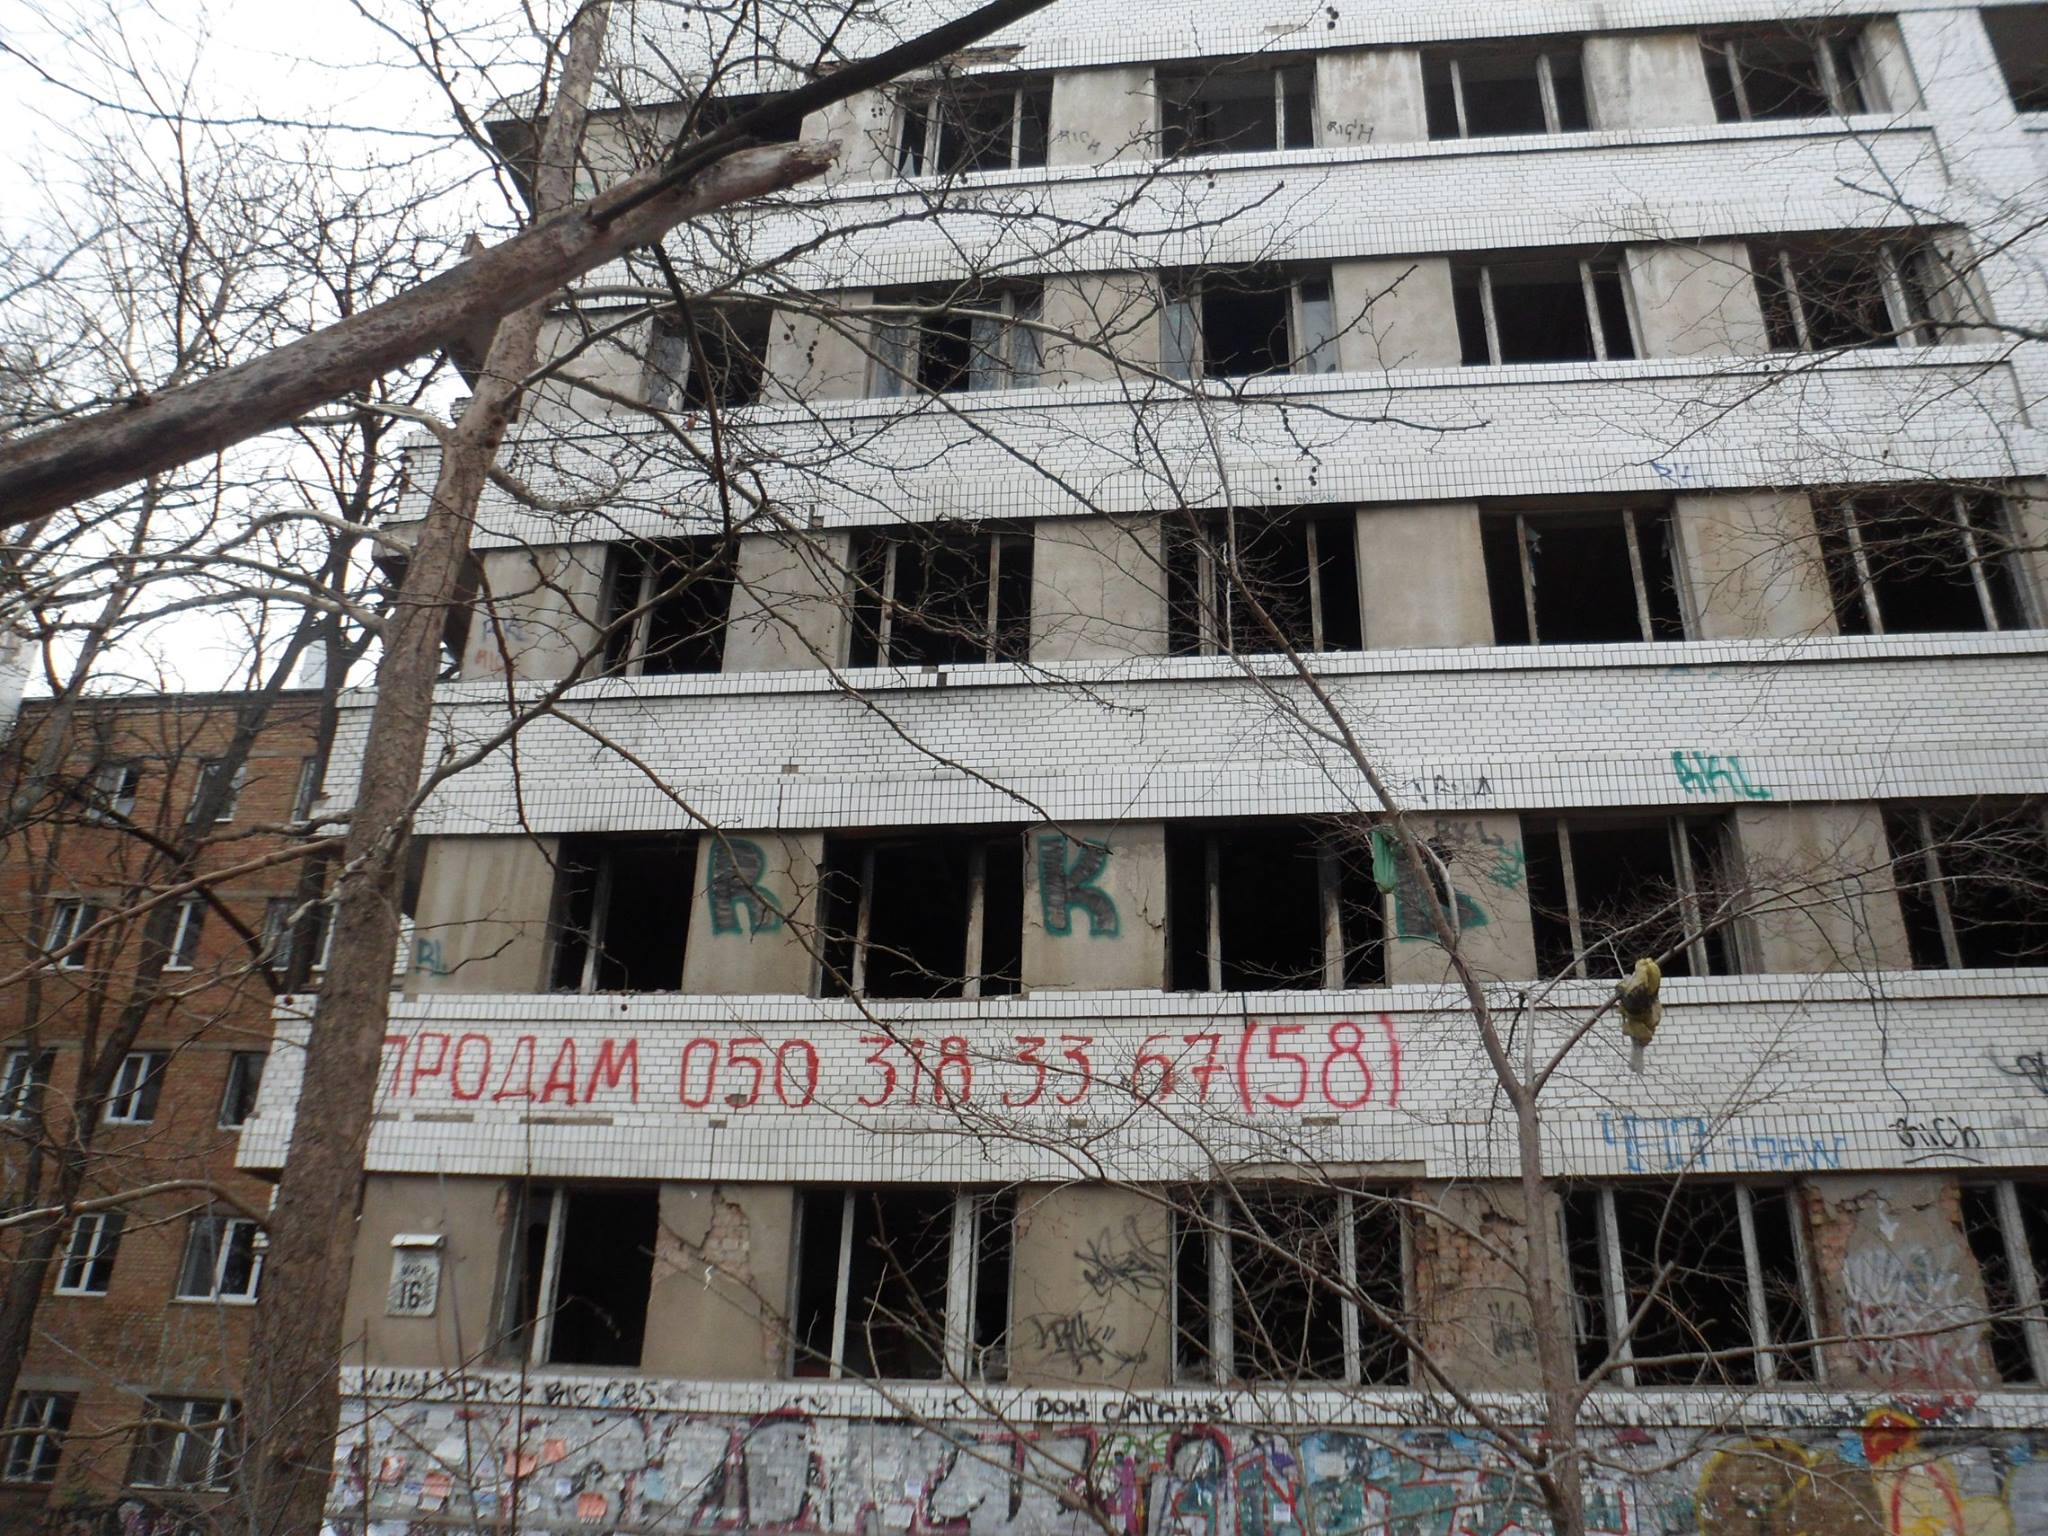 Миколаївці поскаржилися на занедбану будівлю, яку окупували безхатченки та наркомани - фото 1